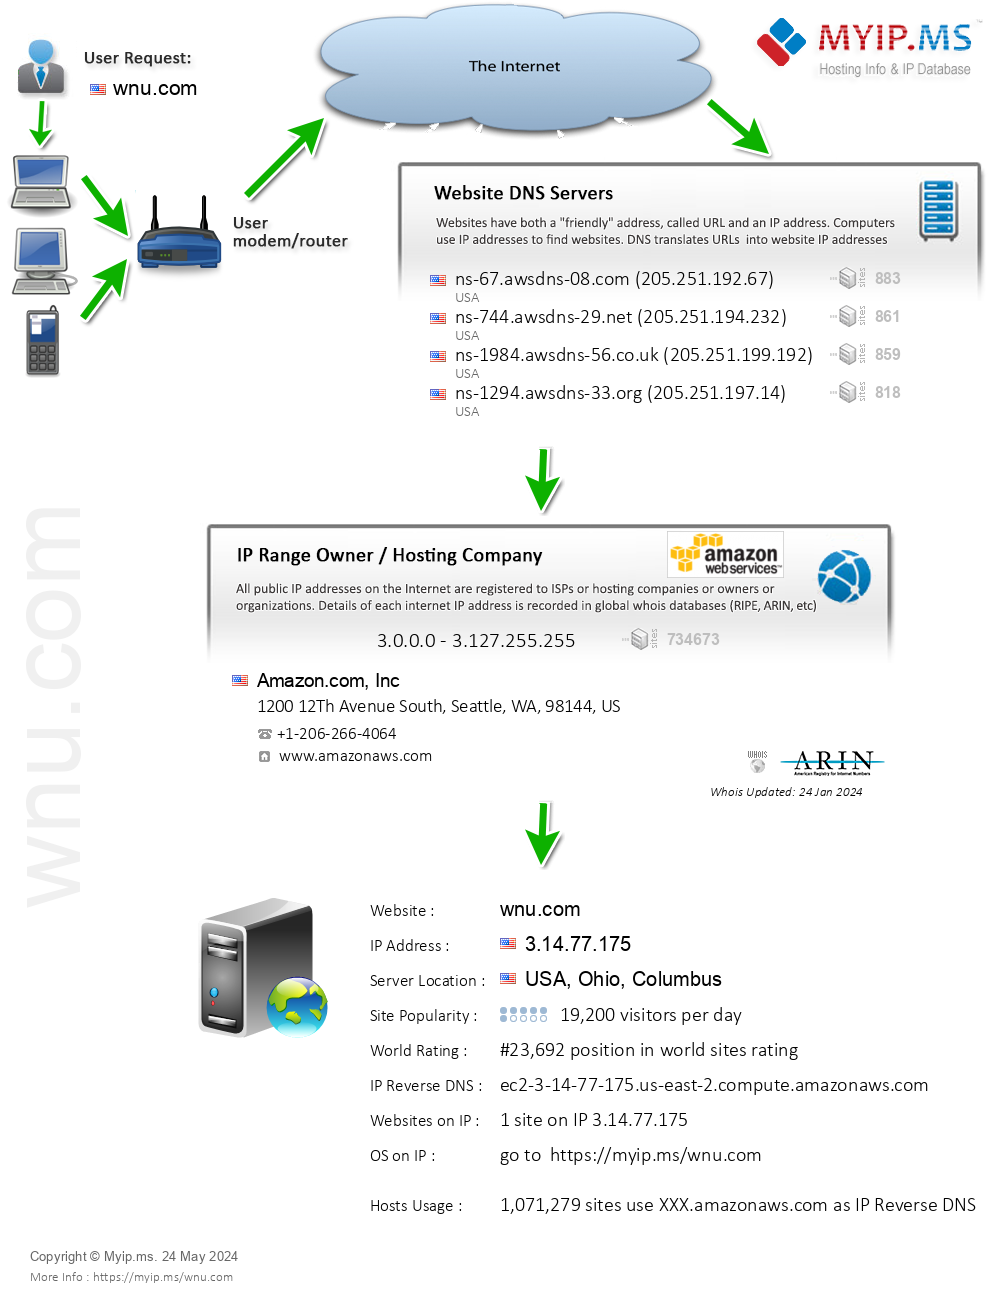 Wnu.com - Website Hosting Visual IP Diagram